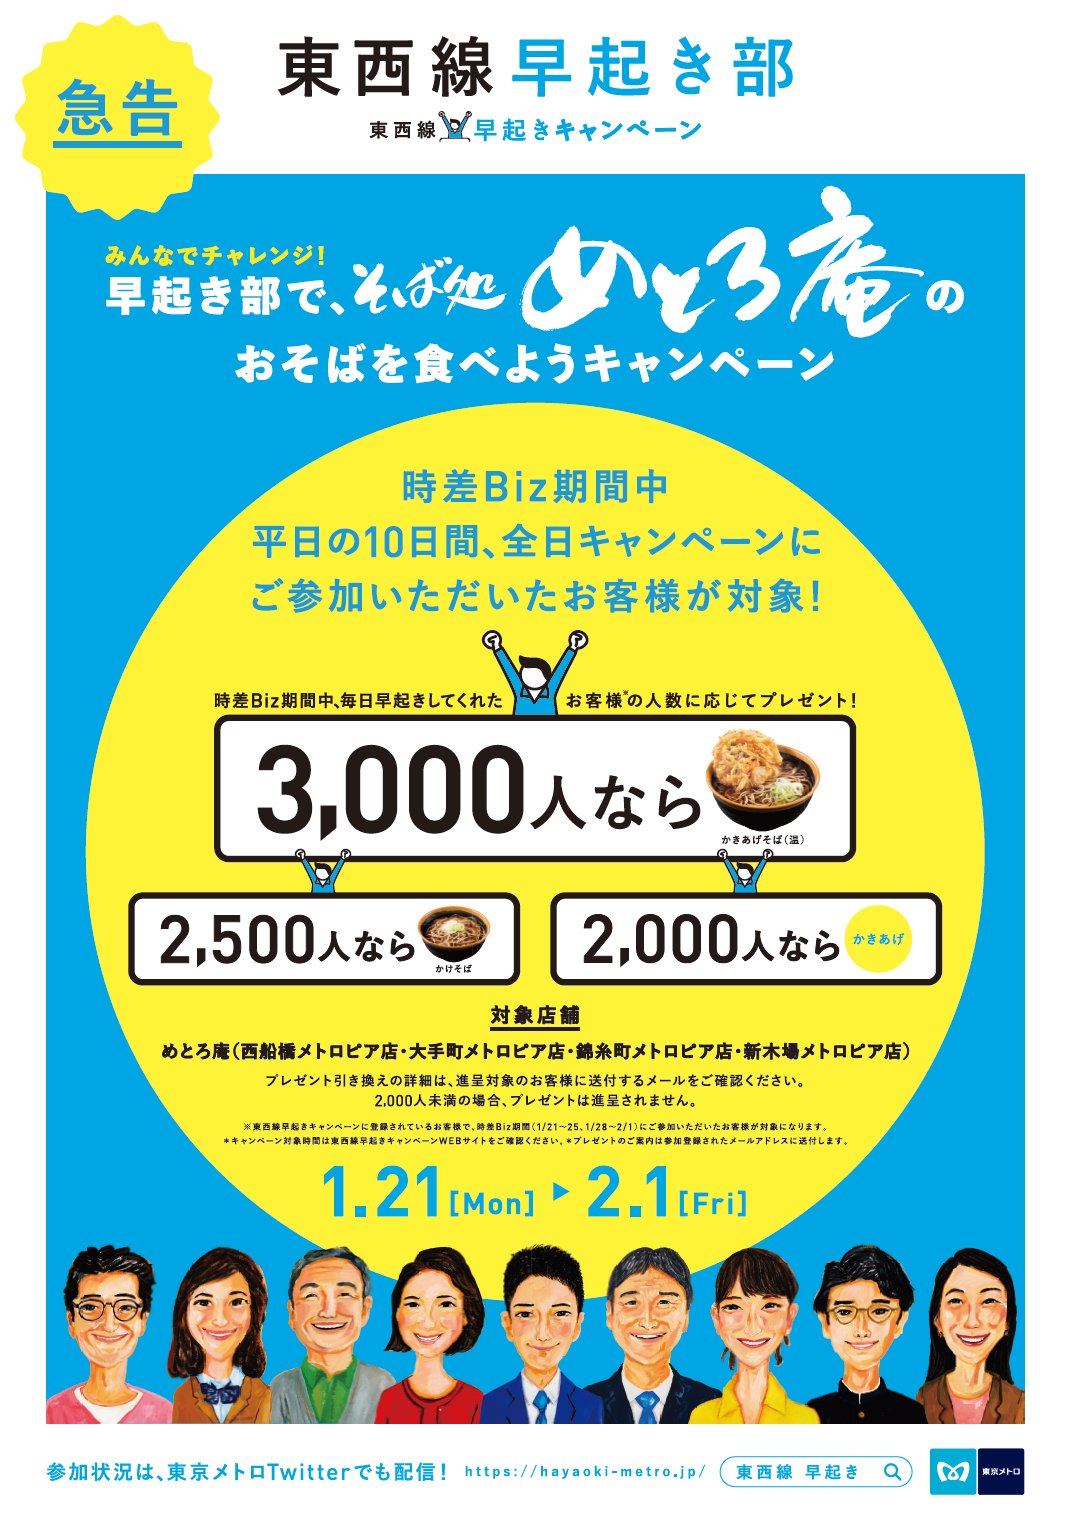 東京メトロ 公式 キャンペーン に参加して みんなでおそばをゲットしよう 時差biz期間中の1月21日 月 2月1日 金 の間 東西線早起きキャンペーン では みんなでチャレンジ 早起き部で めとろ庵のおそばを食べようキャンペーン を実施します 詳細